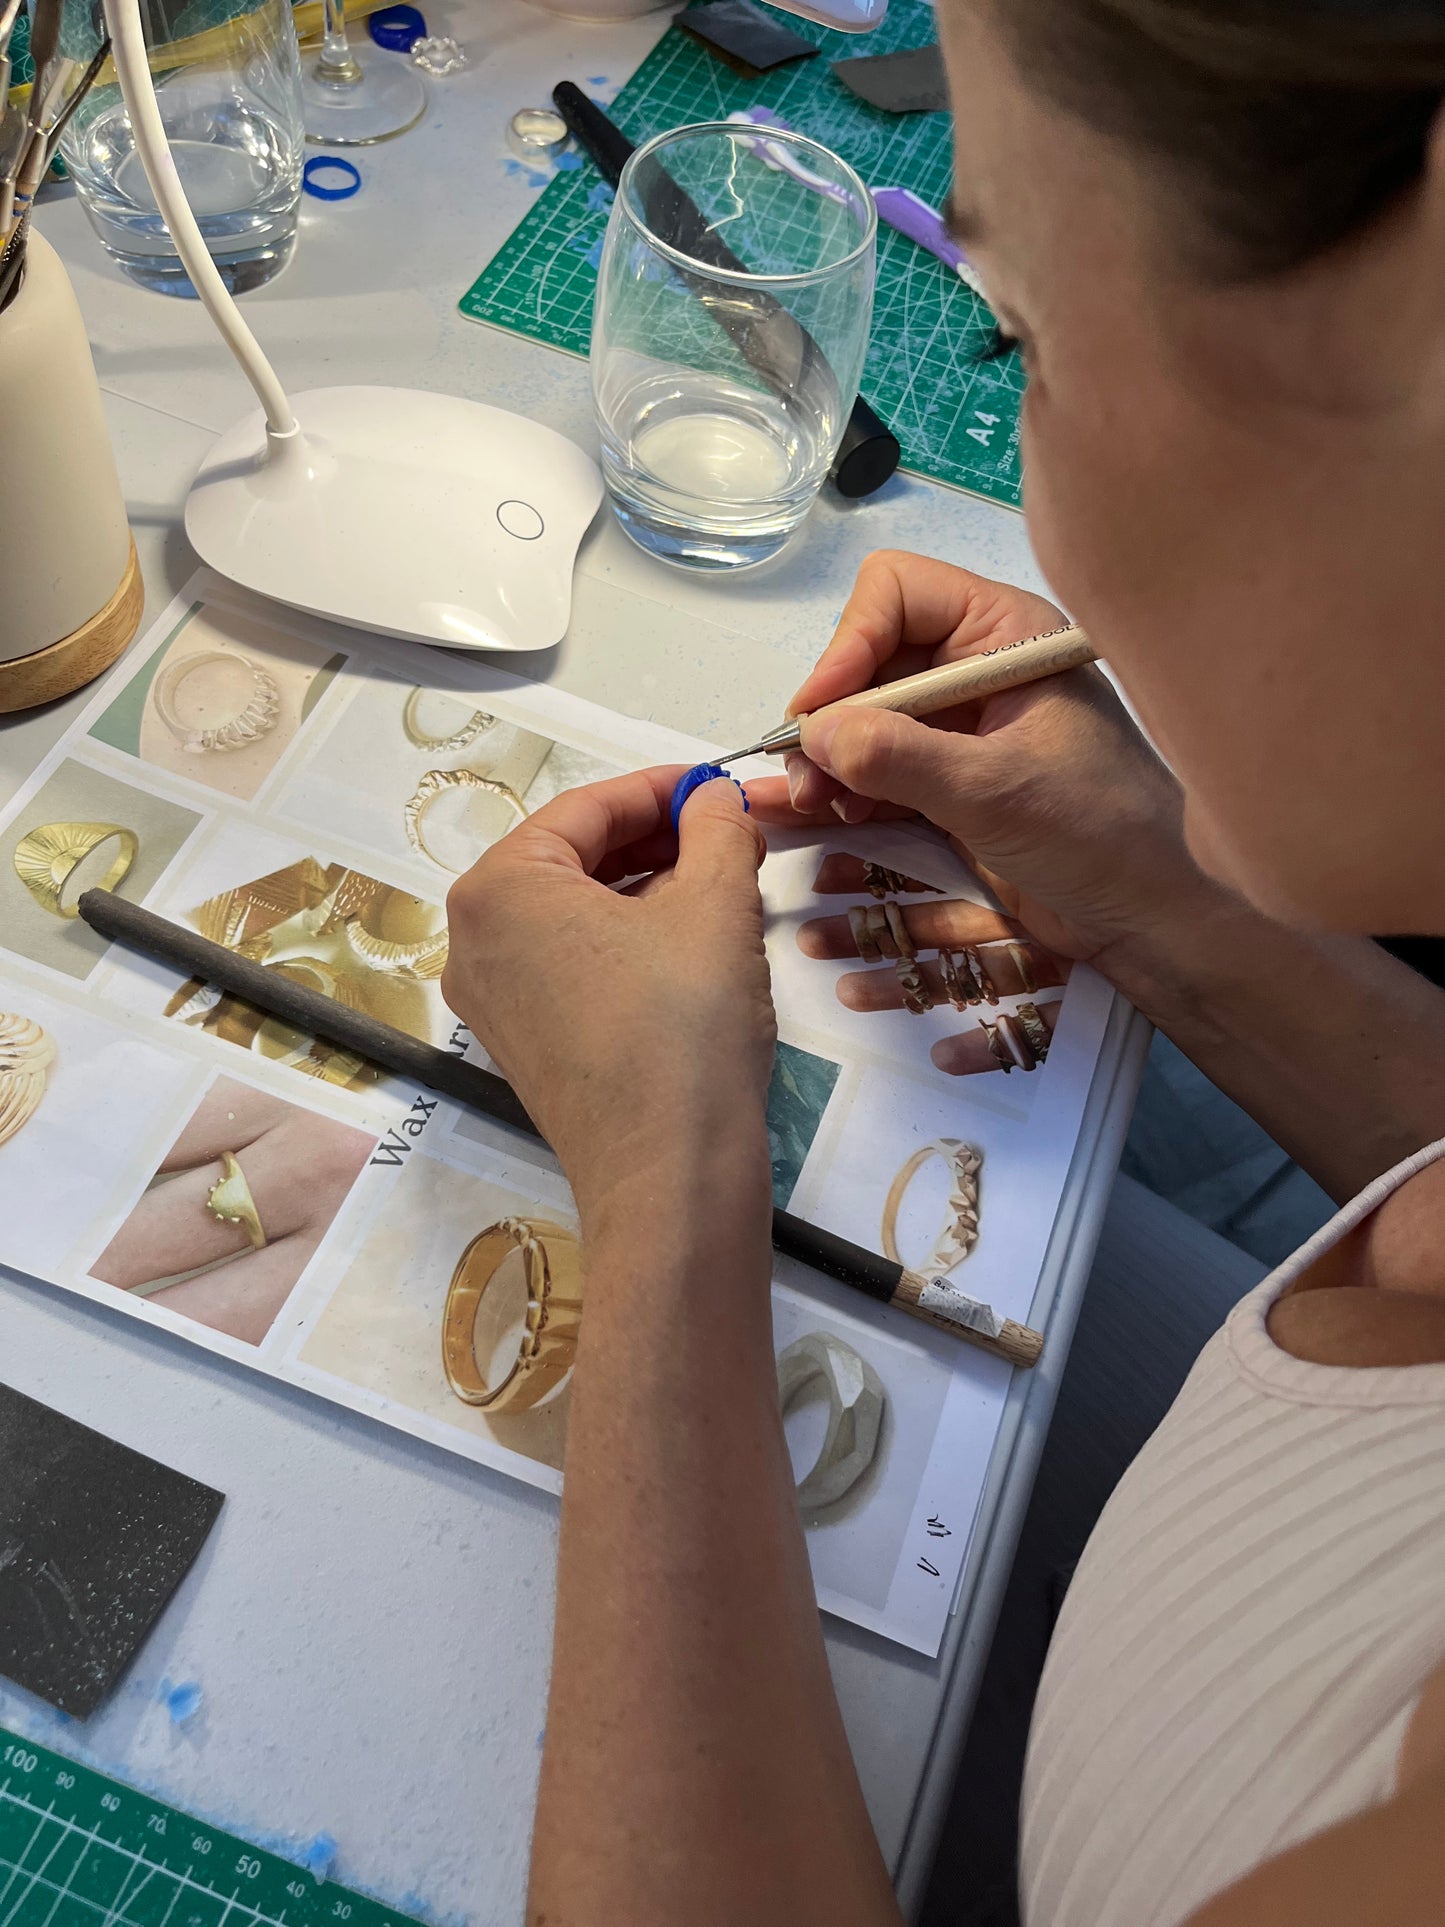 Jewellery Making Workshop Gift Card